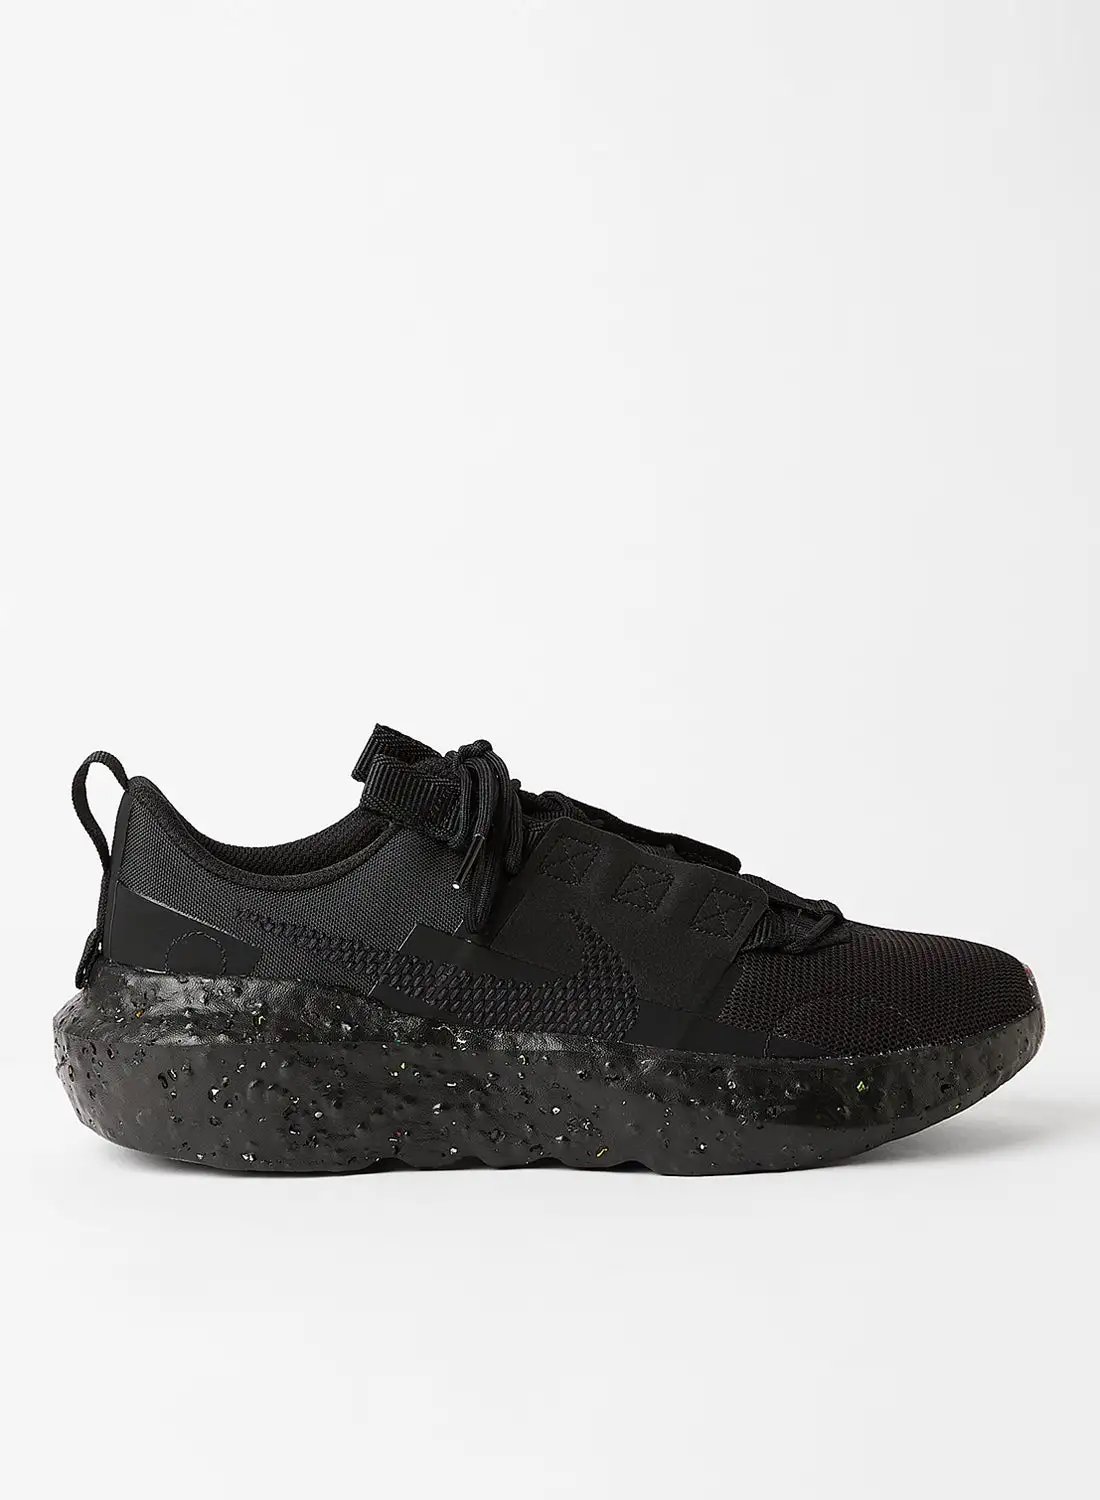 Nike Crater Impact Sneakers Black